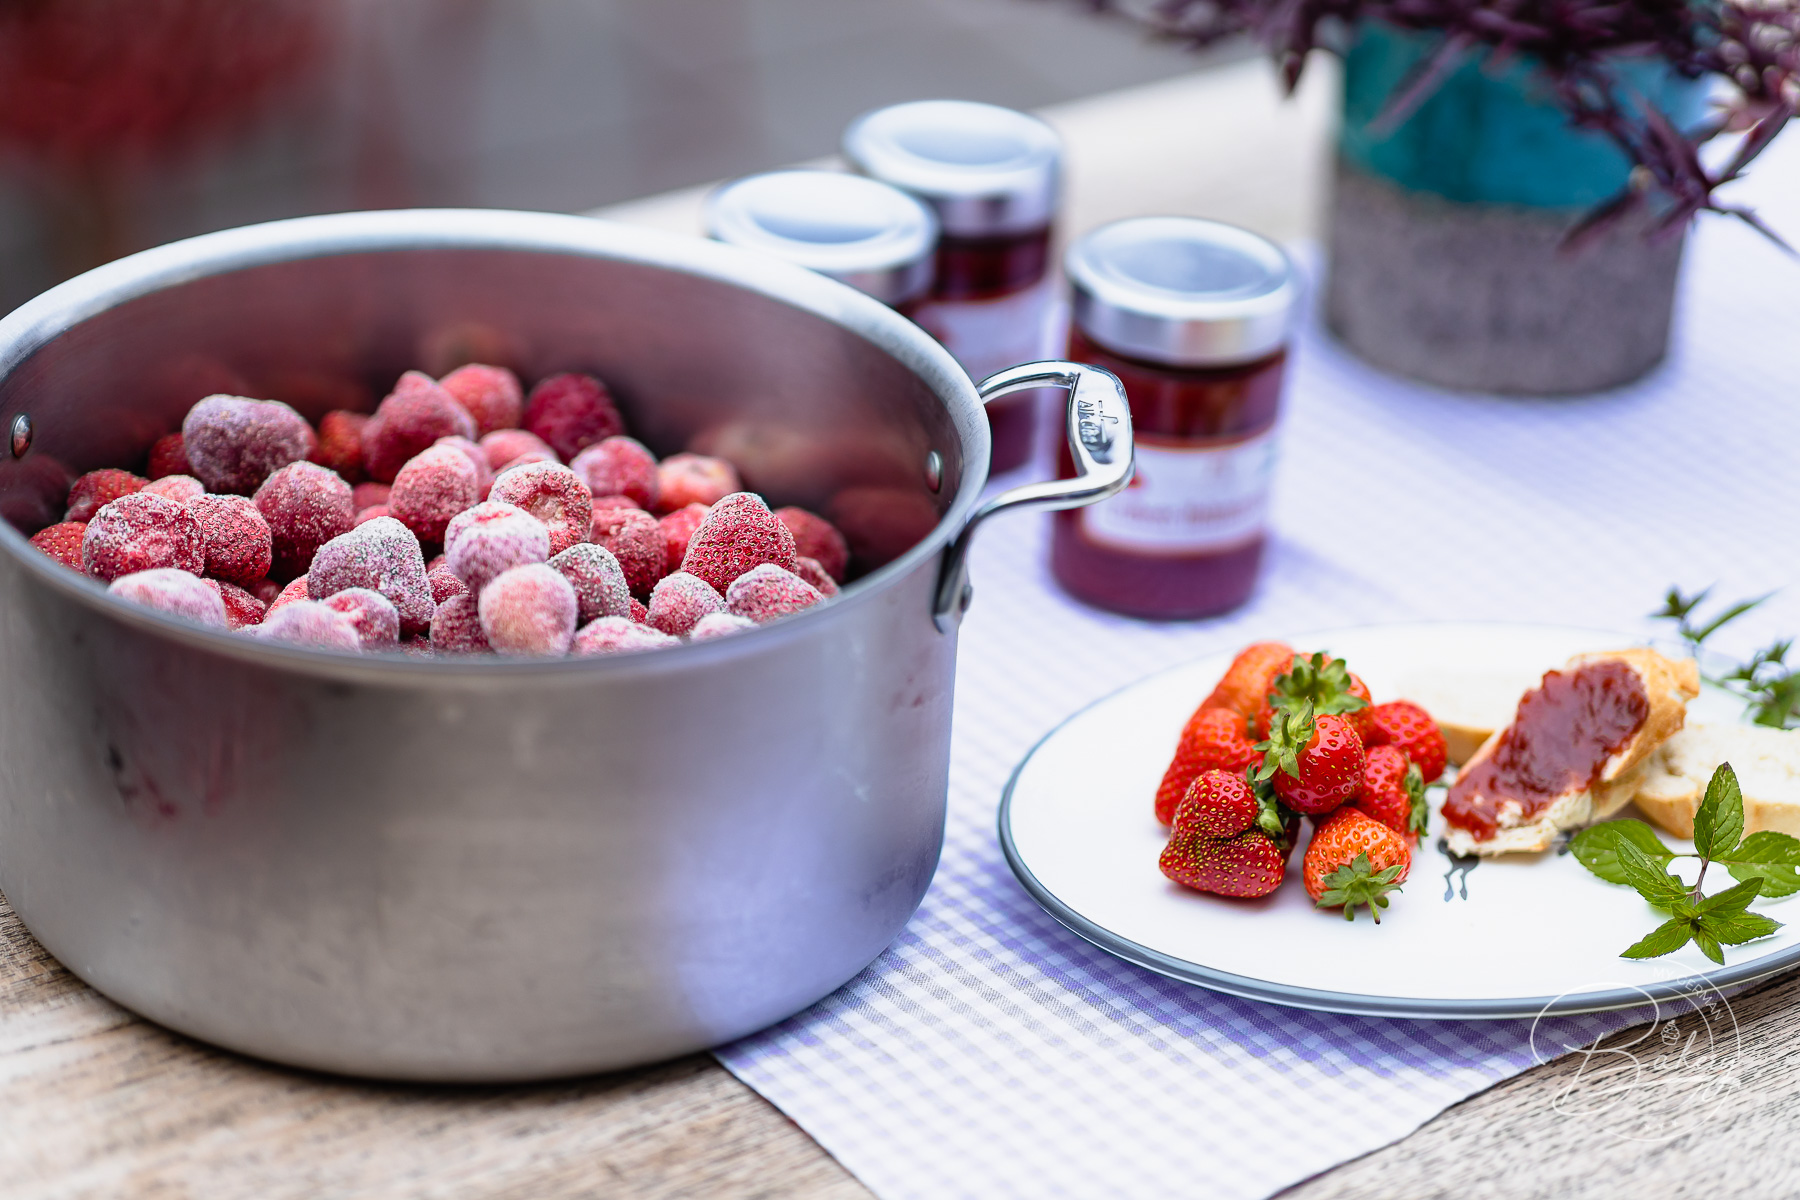 Erdbeermarmelade Rezept - ganz schnell selbst gemacht - Rezept Erdbeermarmelade einfach - Marmelade kochen - Marmelade aus Erdbeeren selber machen - frische Erdbeeren, Tiefkühl Erdbeeren, TK Erdbeeren - Einfache Anleitung zur Beerenmarmelade auch Himbeeren,